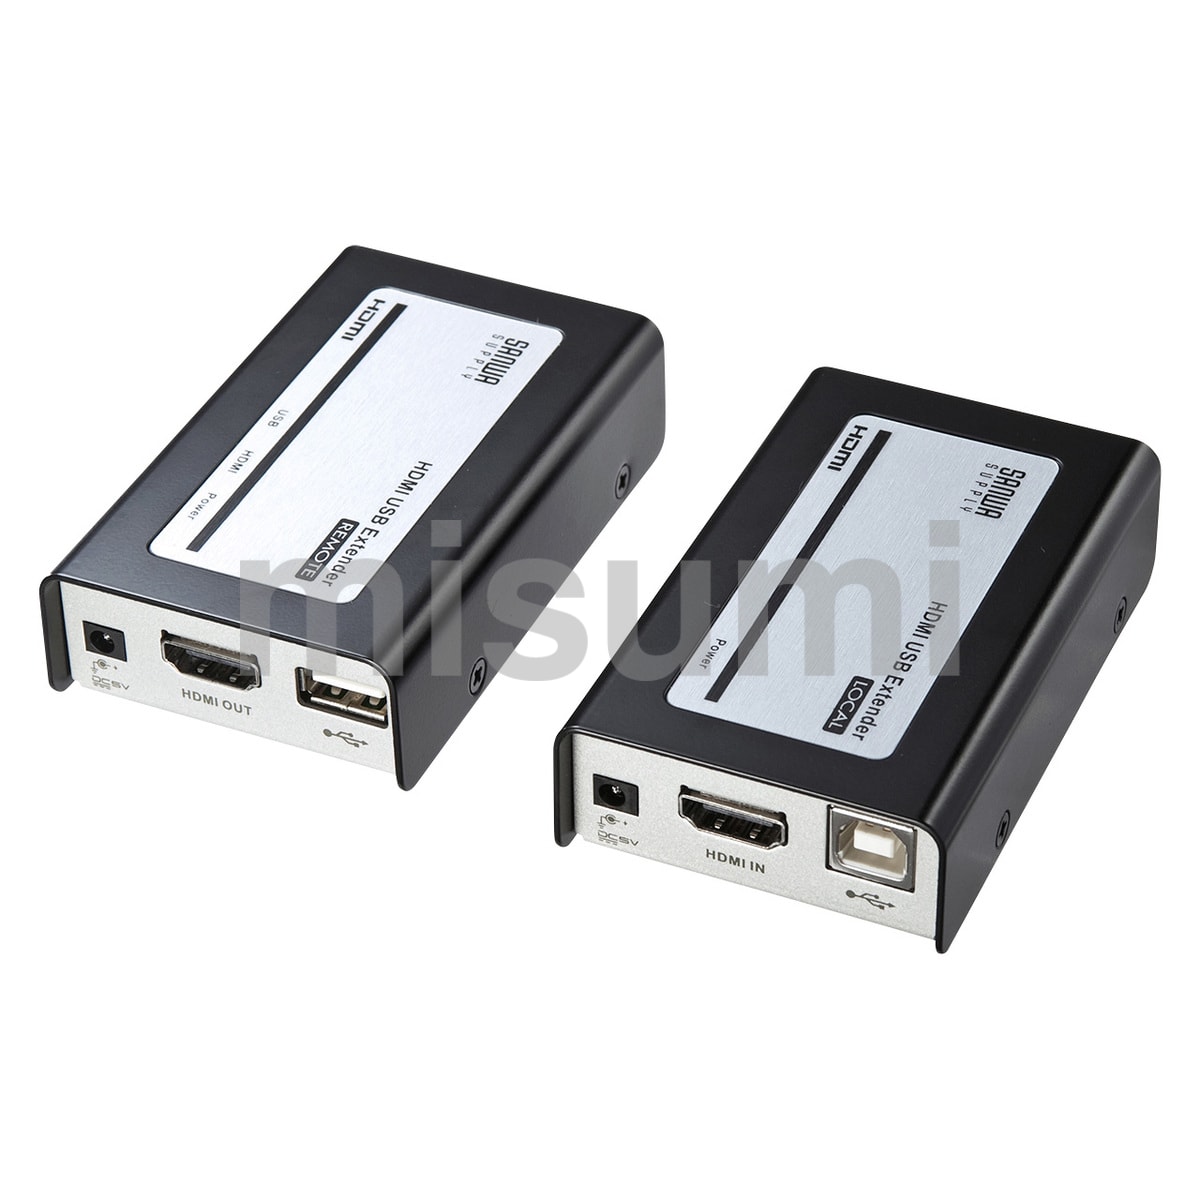 HDMI+USB2.0エクステンダー VGA-EXHDU | サンワサプライ | MISUMI(ミスミ)